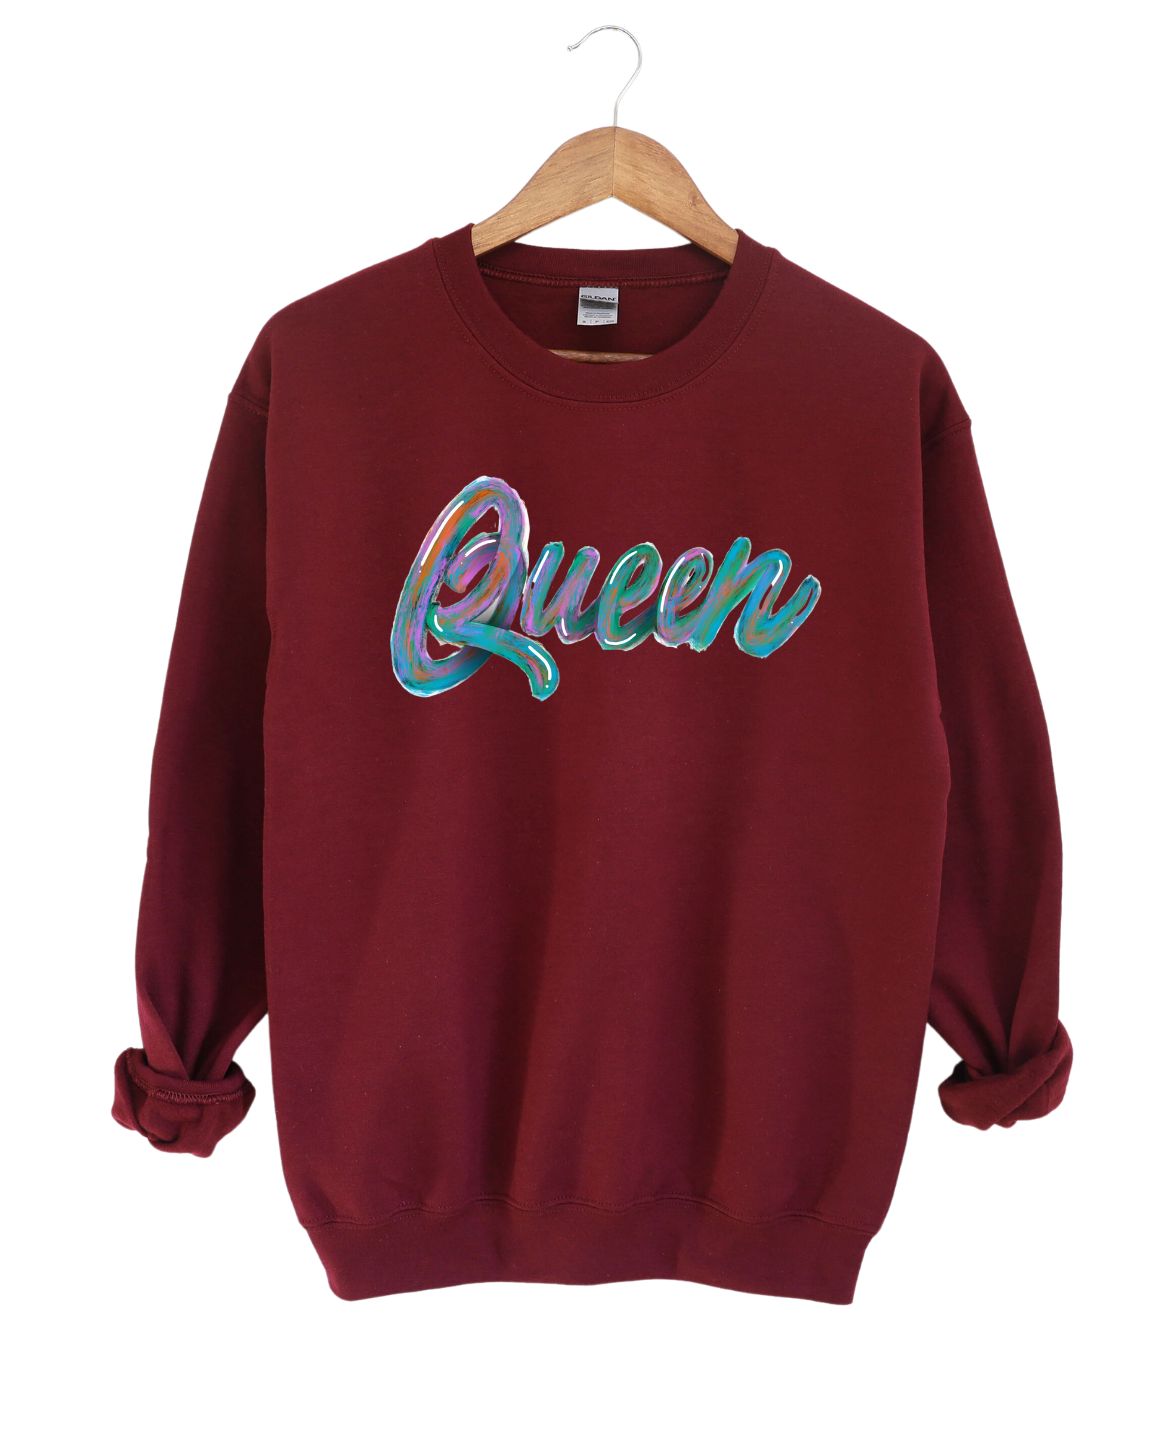 Queen  -Sweatshirt